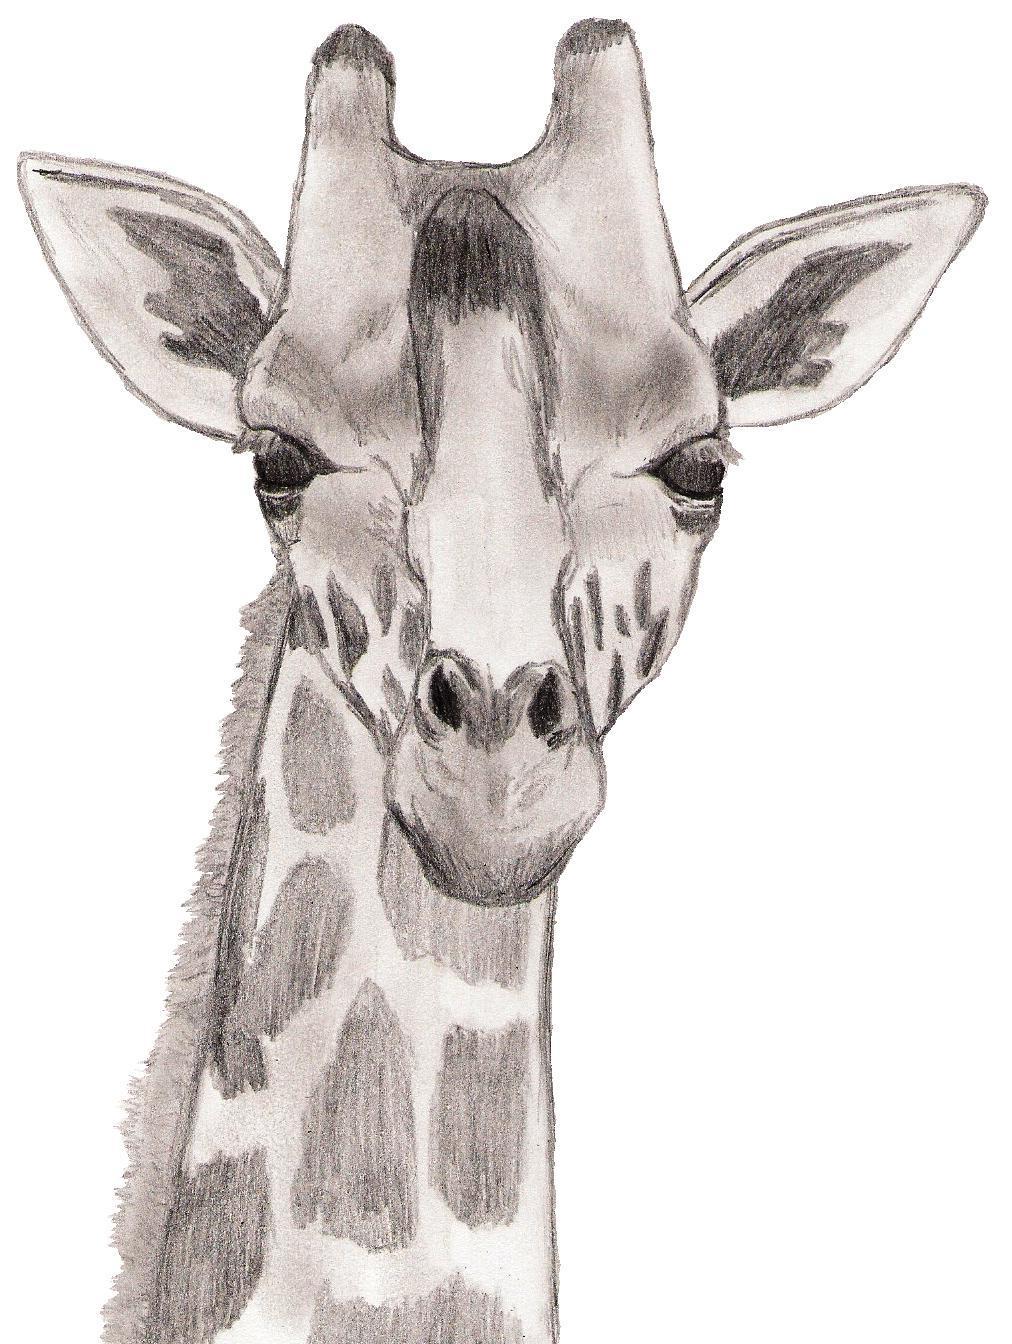 Giraffe Sketch Art images